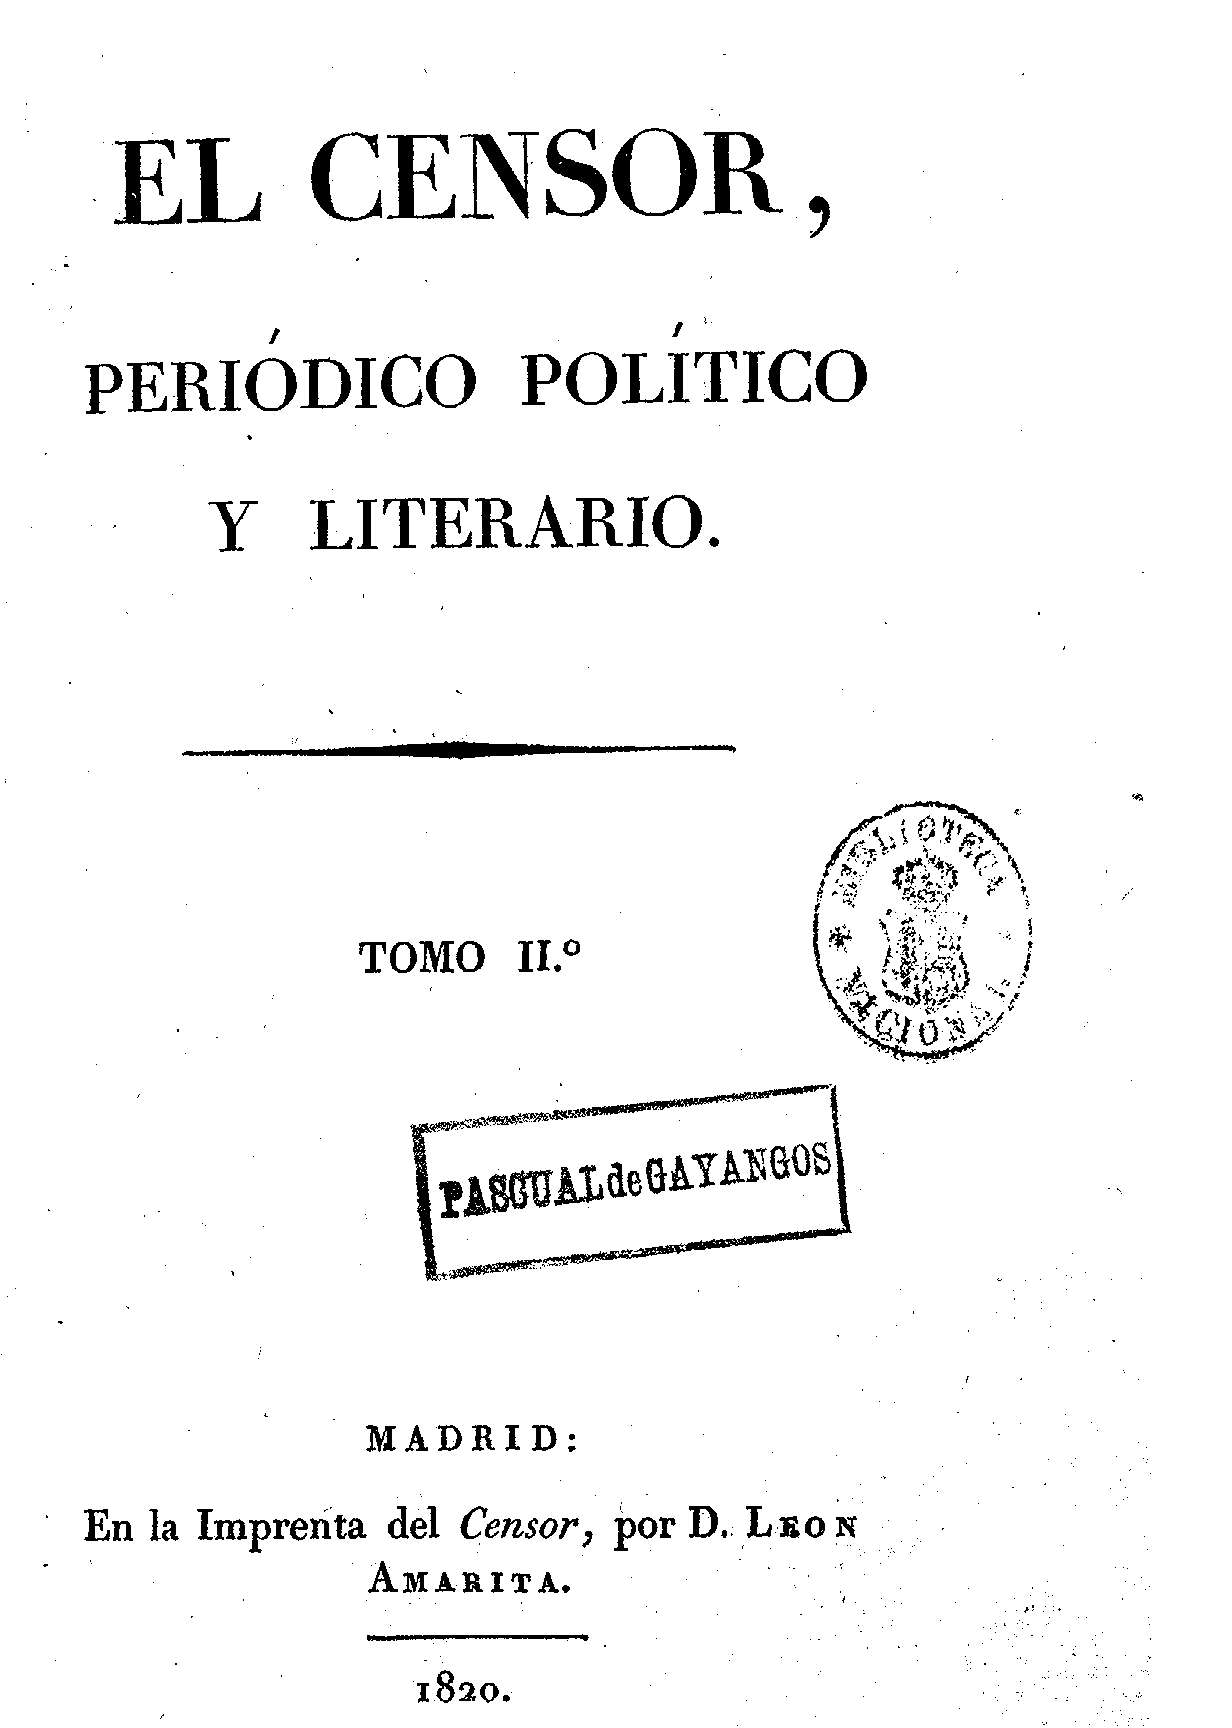 El censor, periódico político y literario. Tomo II